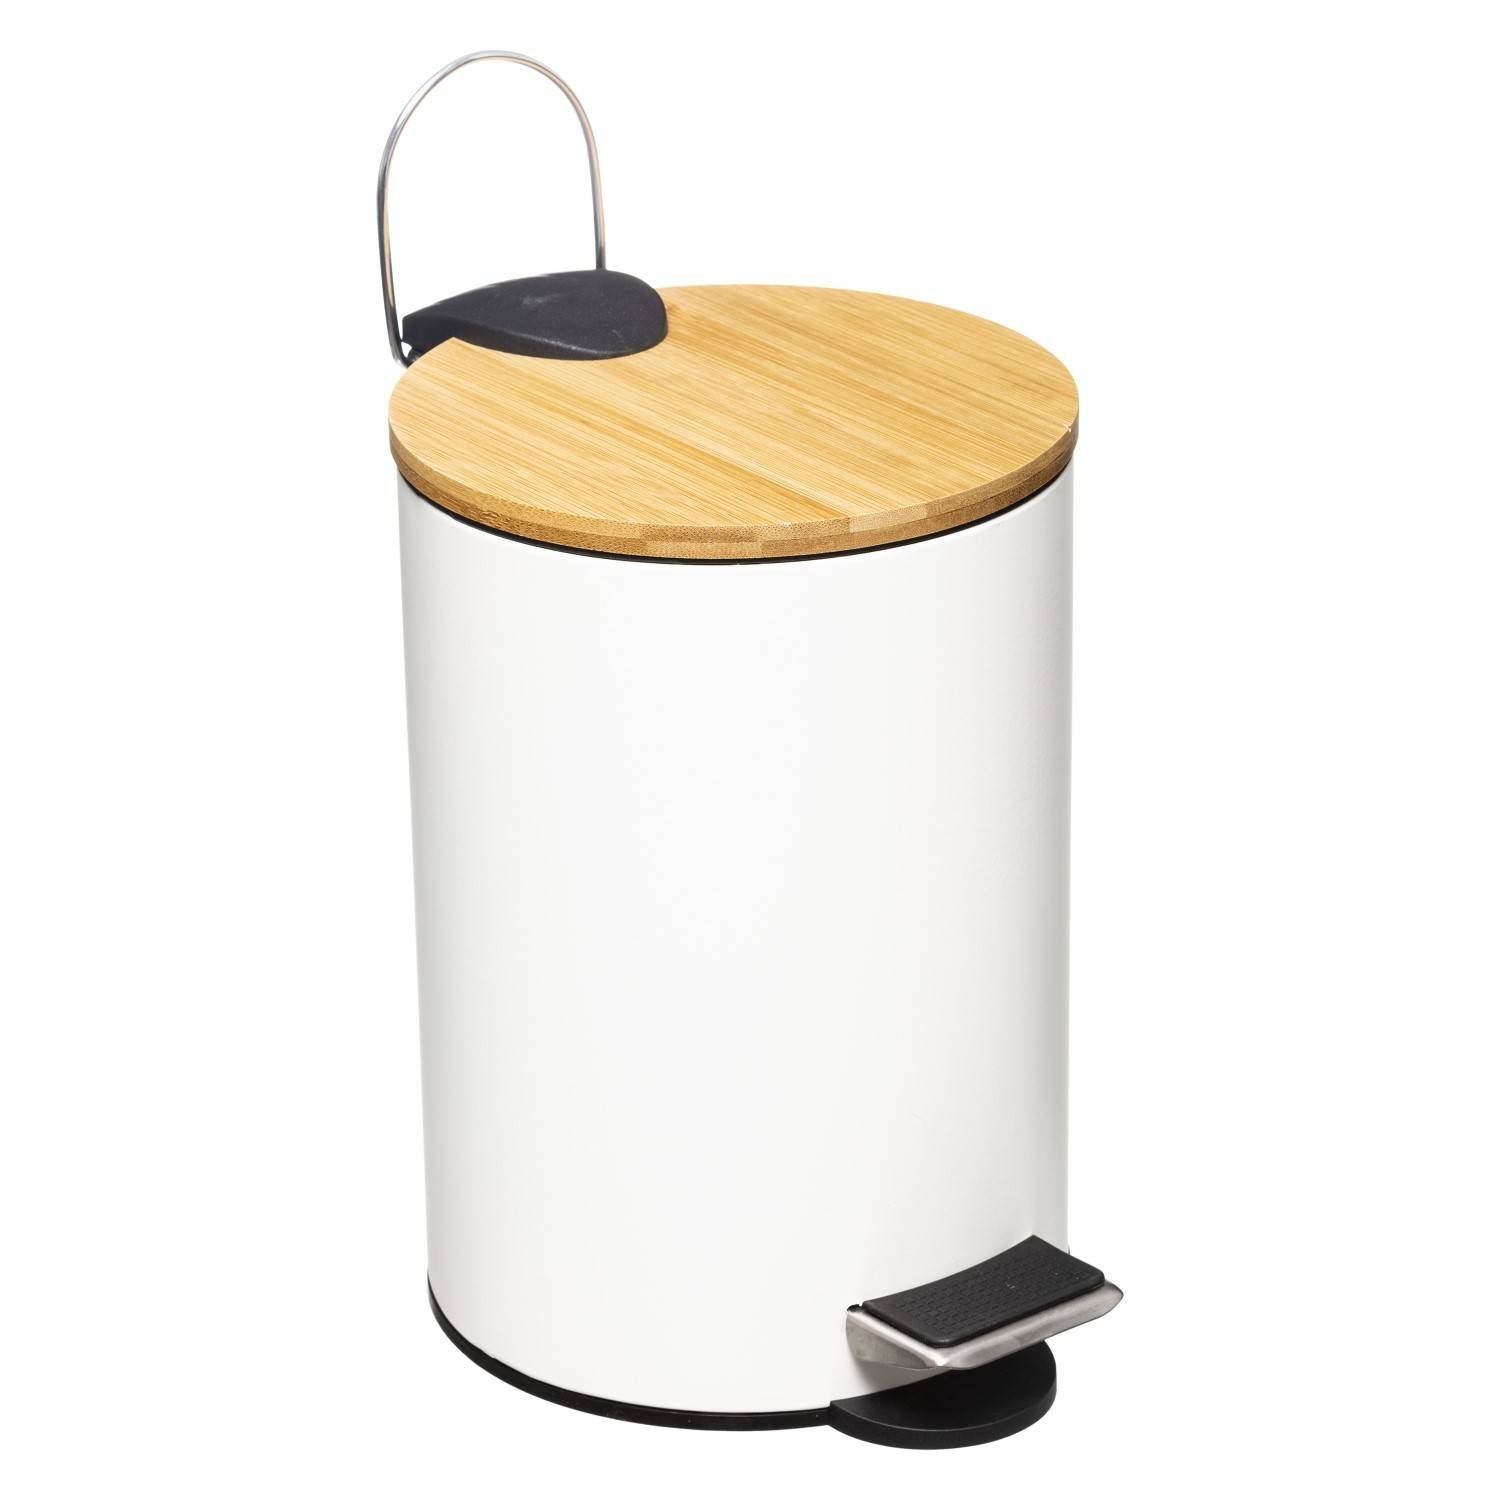 5five Simply Smart Odpadkový koš do koupelny s bambusovým víkem MODERN, bílý, 3 l - EDAXO.CZ s.r.o.